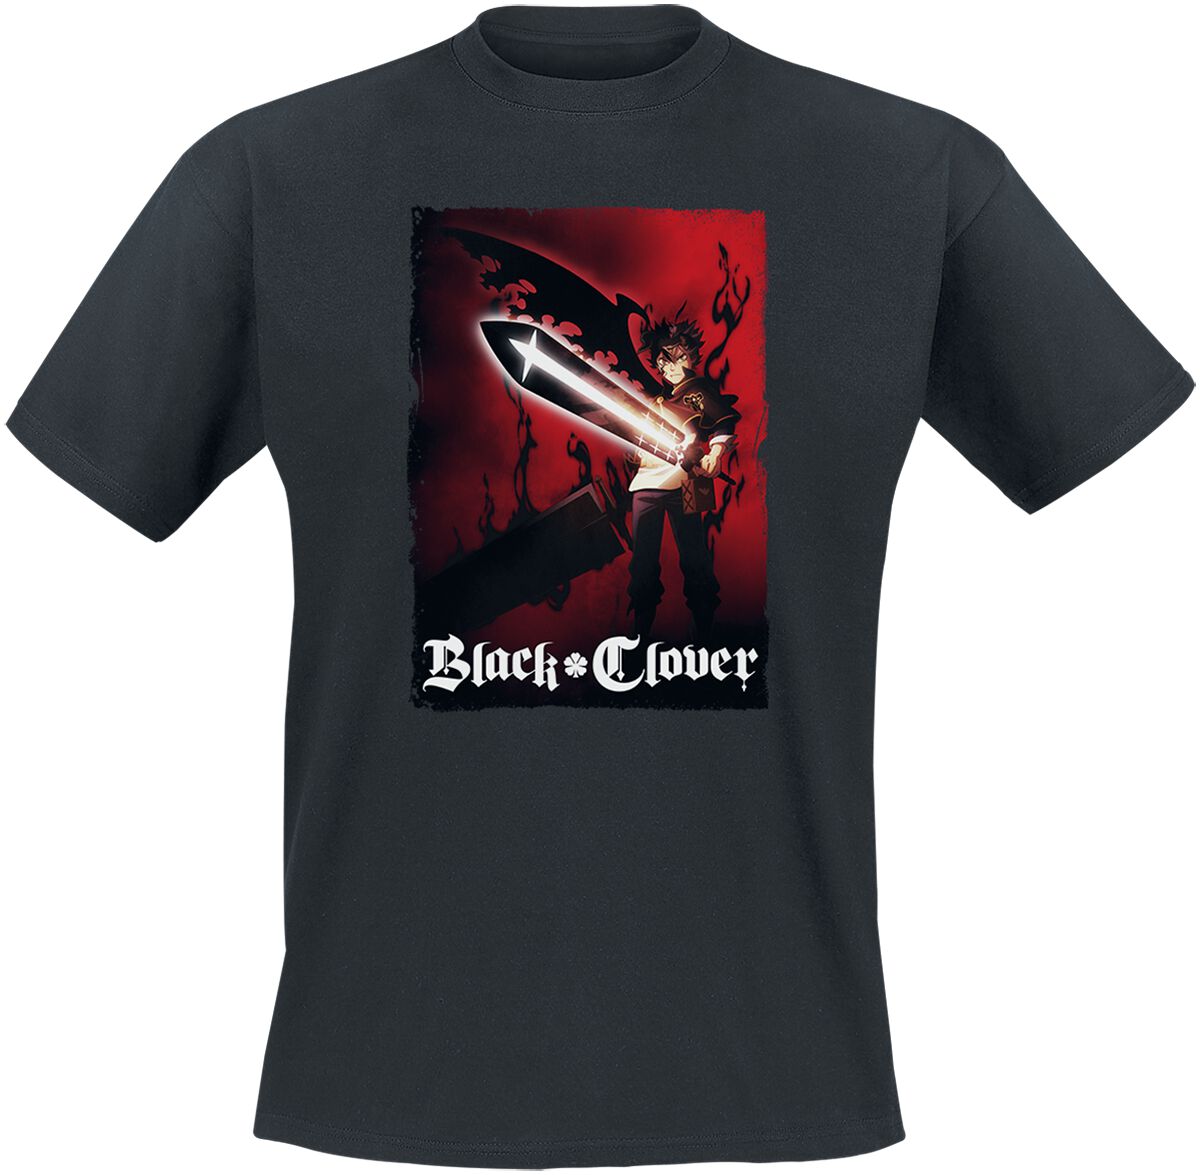 Black Clover - Anime T-Shirt - Find Your Power - S bis M - für Männer - Größe S - schwarz  - Lizenzierter Fanartikel